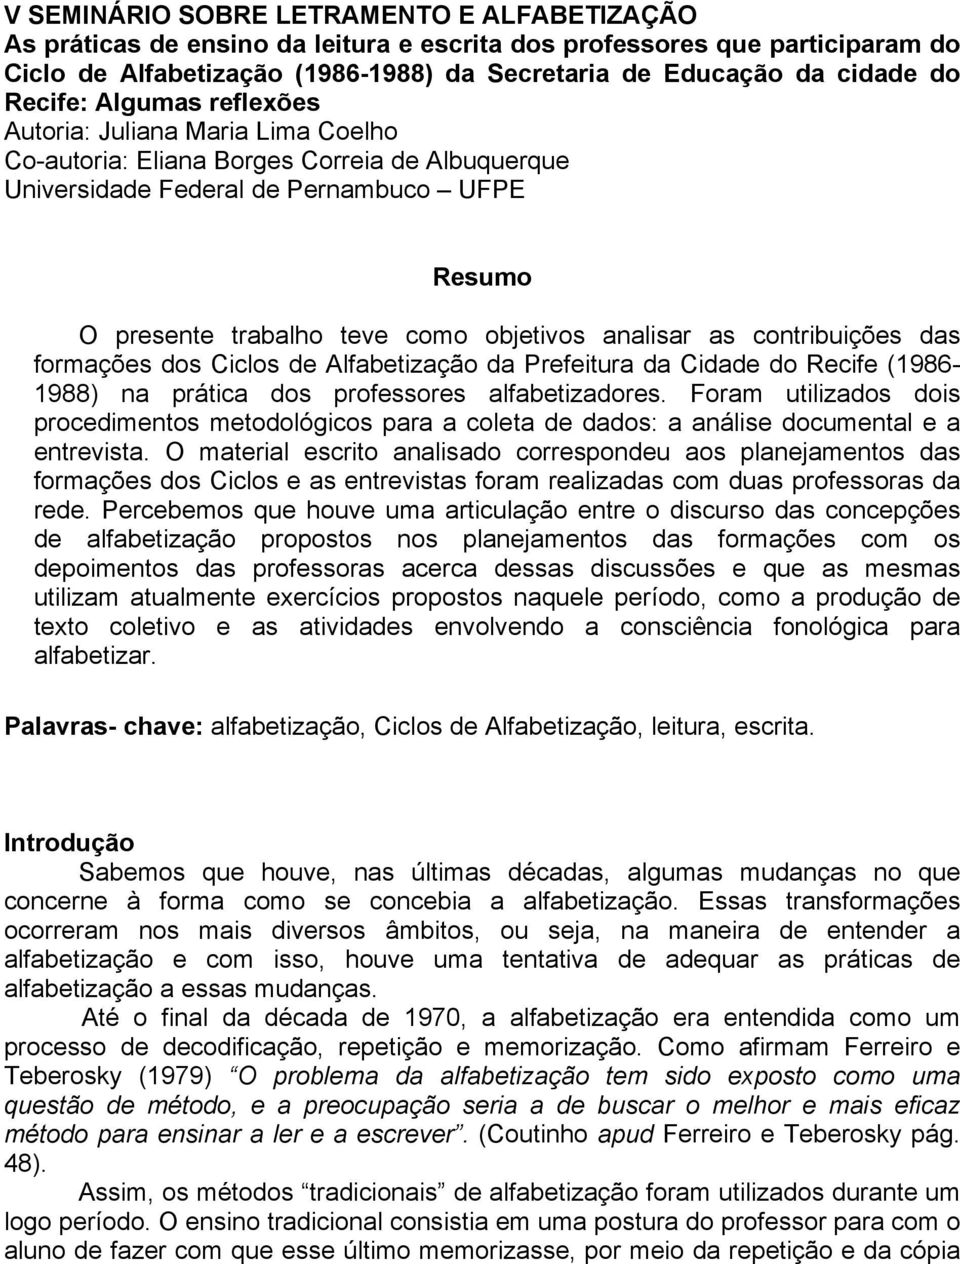 analisar as contribuições das formações dos Ciclos de Alfabetização da Prefeitura da Cidade do Recife (1986-1988) na prática dos professores alfabetizadores.